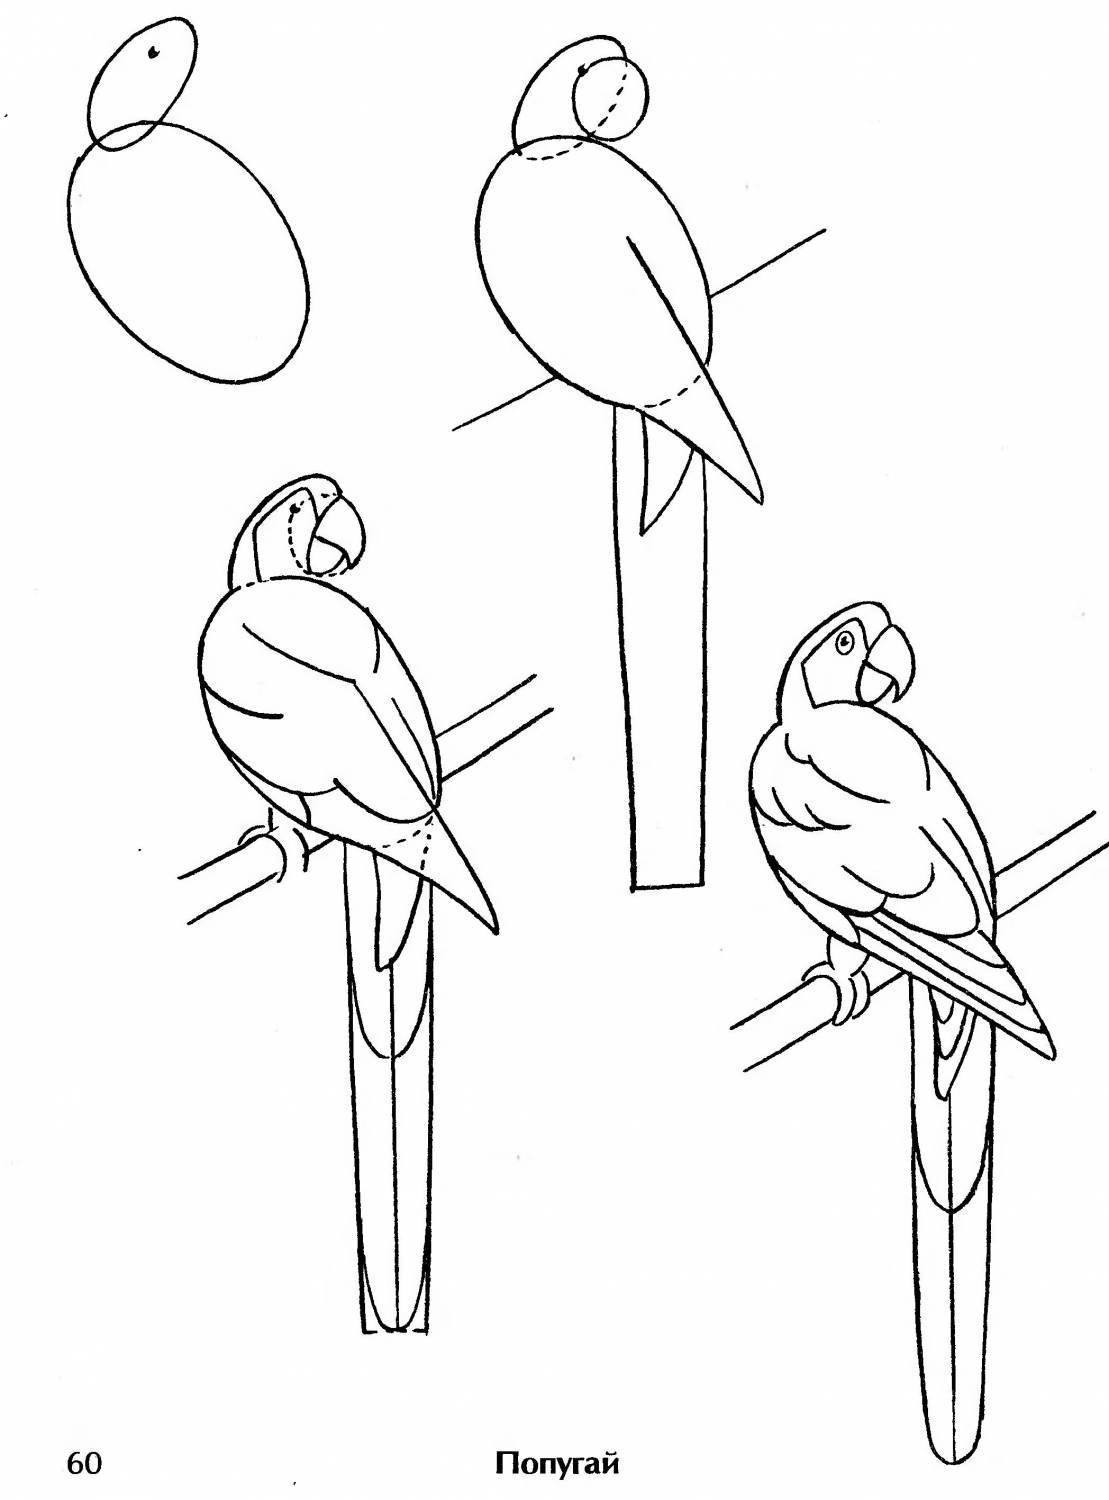 Поэтапный рисунок попугая